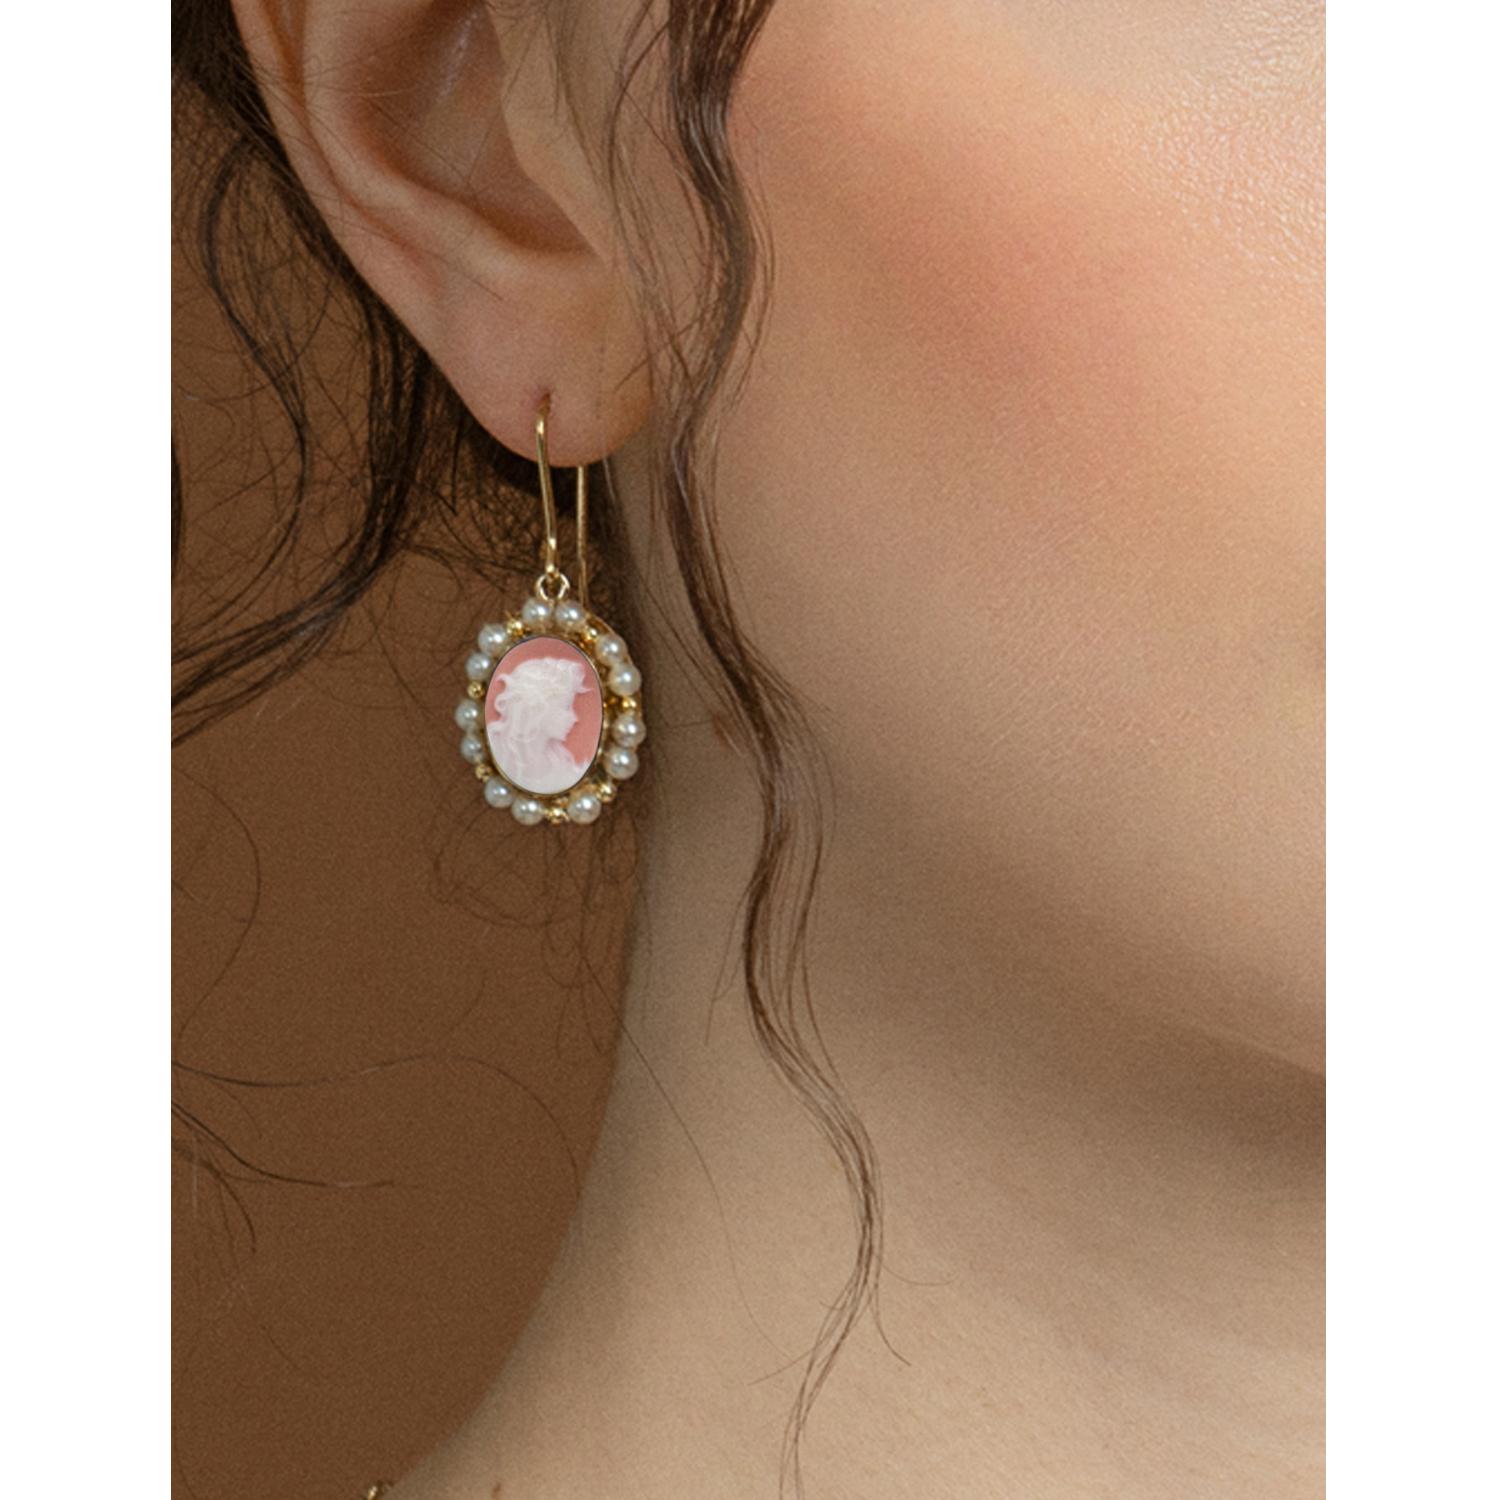 Réalisées en or 14 carats par des artisans italiens, ces élégantes boucles d'oreilles de la collection Little Lovelies de Vintouch présentent une paire de camées gravés à la main sur de la porcelaine de Capodimonte, représentant deux jeunes femmes